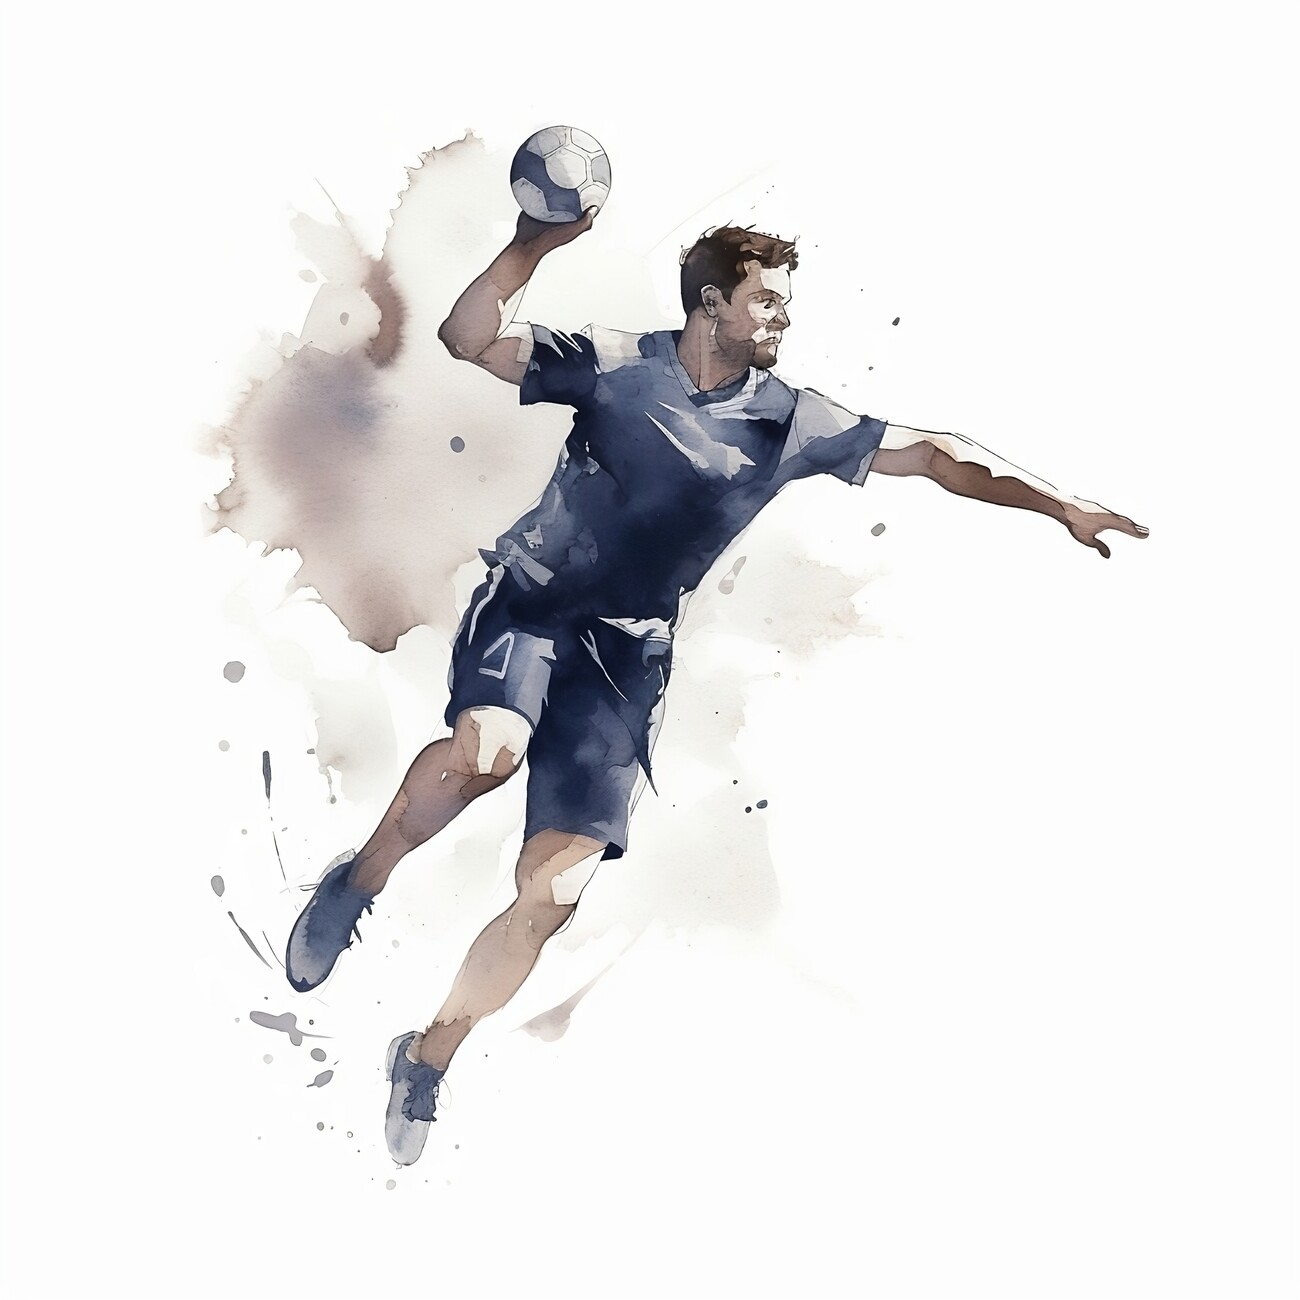 Poster, affiche Handball player, watercolor image, Cadeaux et merch